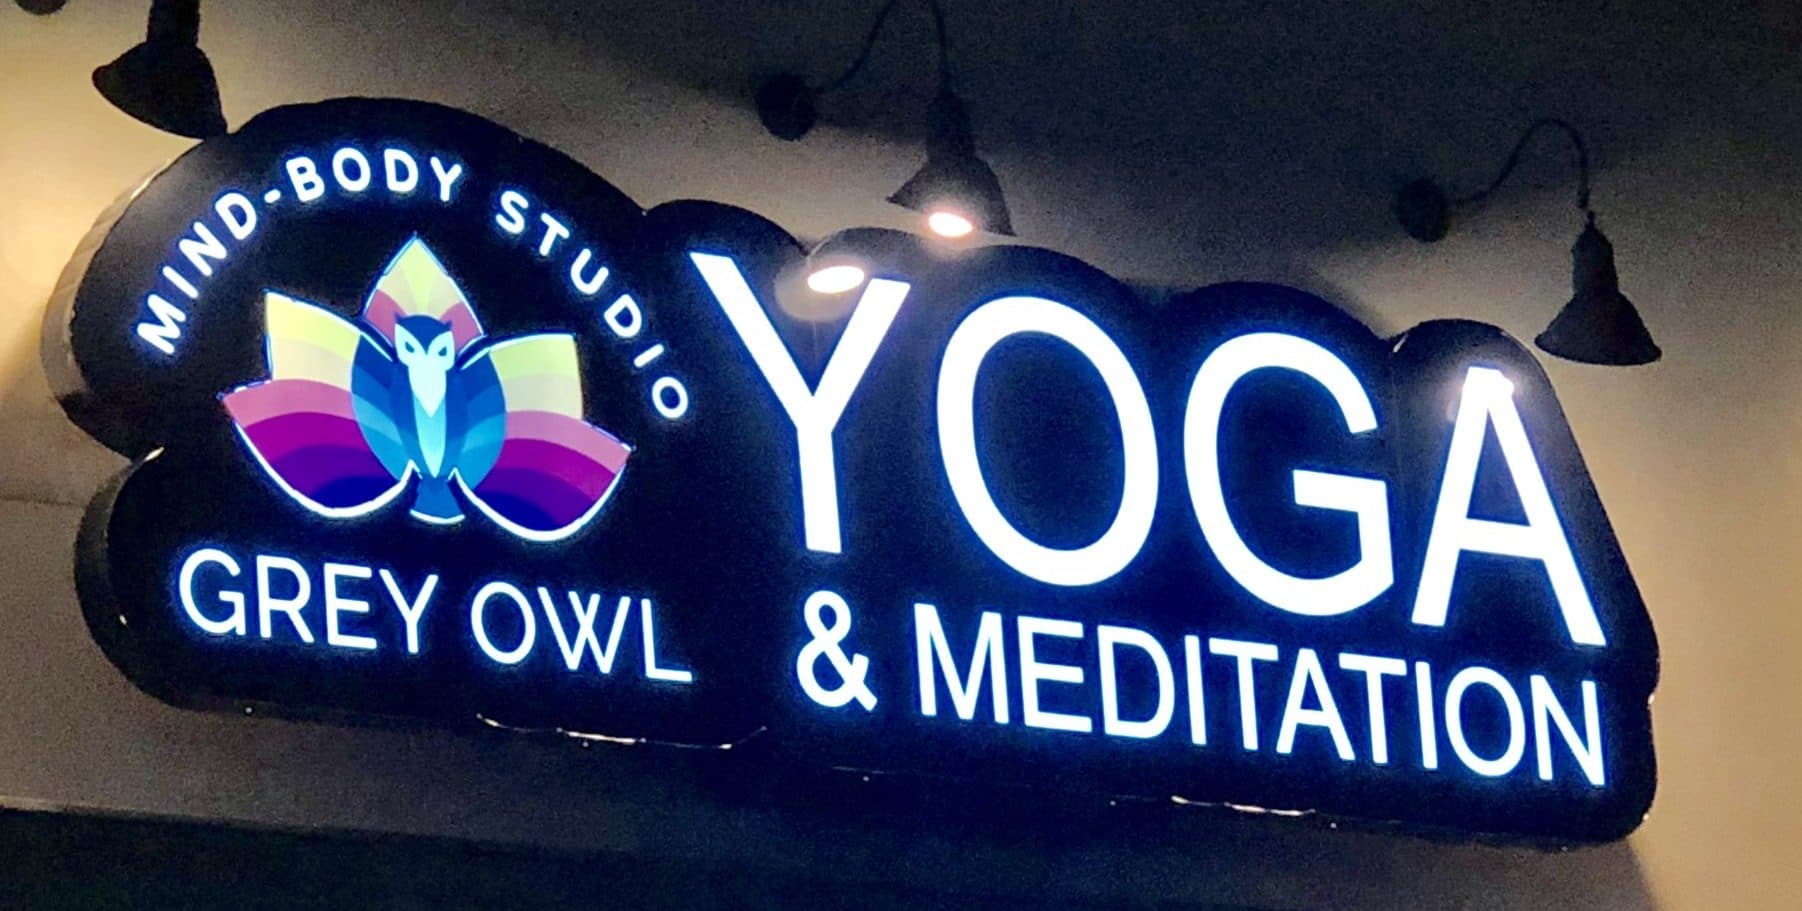 Grey Owl Yoga Studio